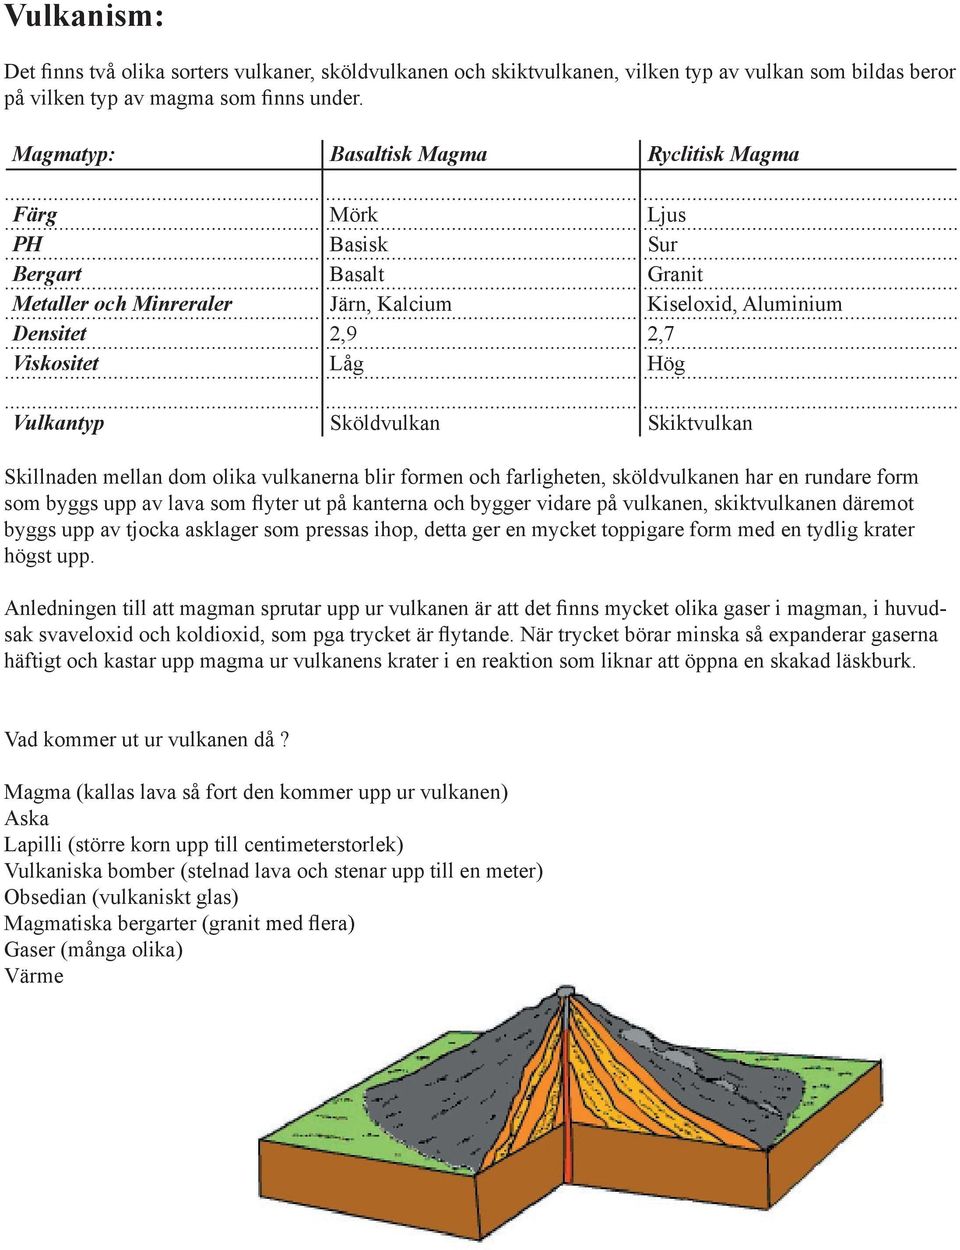 Sköldvulkan Skiktvulkan Skillnaden mellan dom olika vulkanerna blir formen och farligheten, sköldvulkanen har en rundare form som byggs upp av lava som flyter ut på kanterna och bygger vidare på